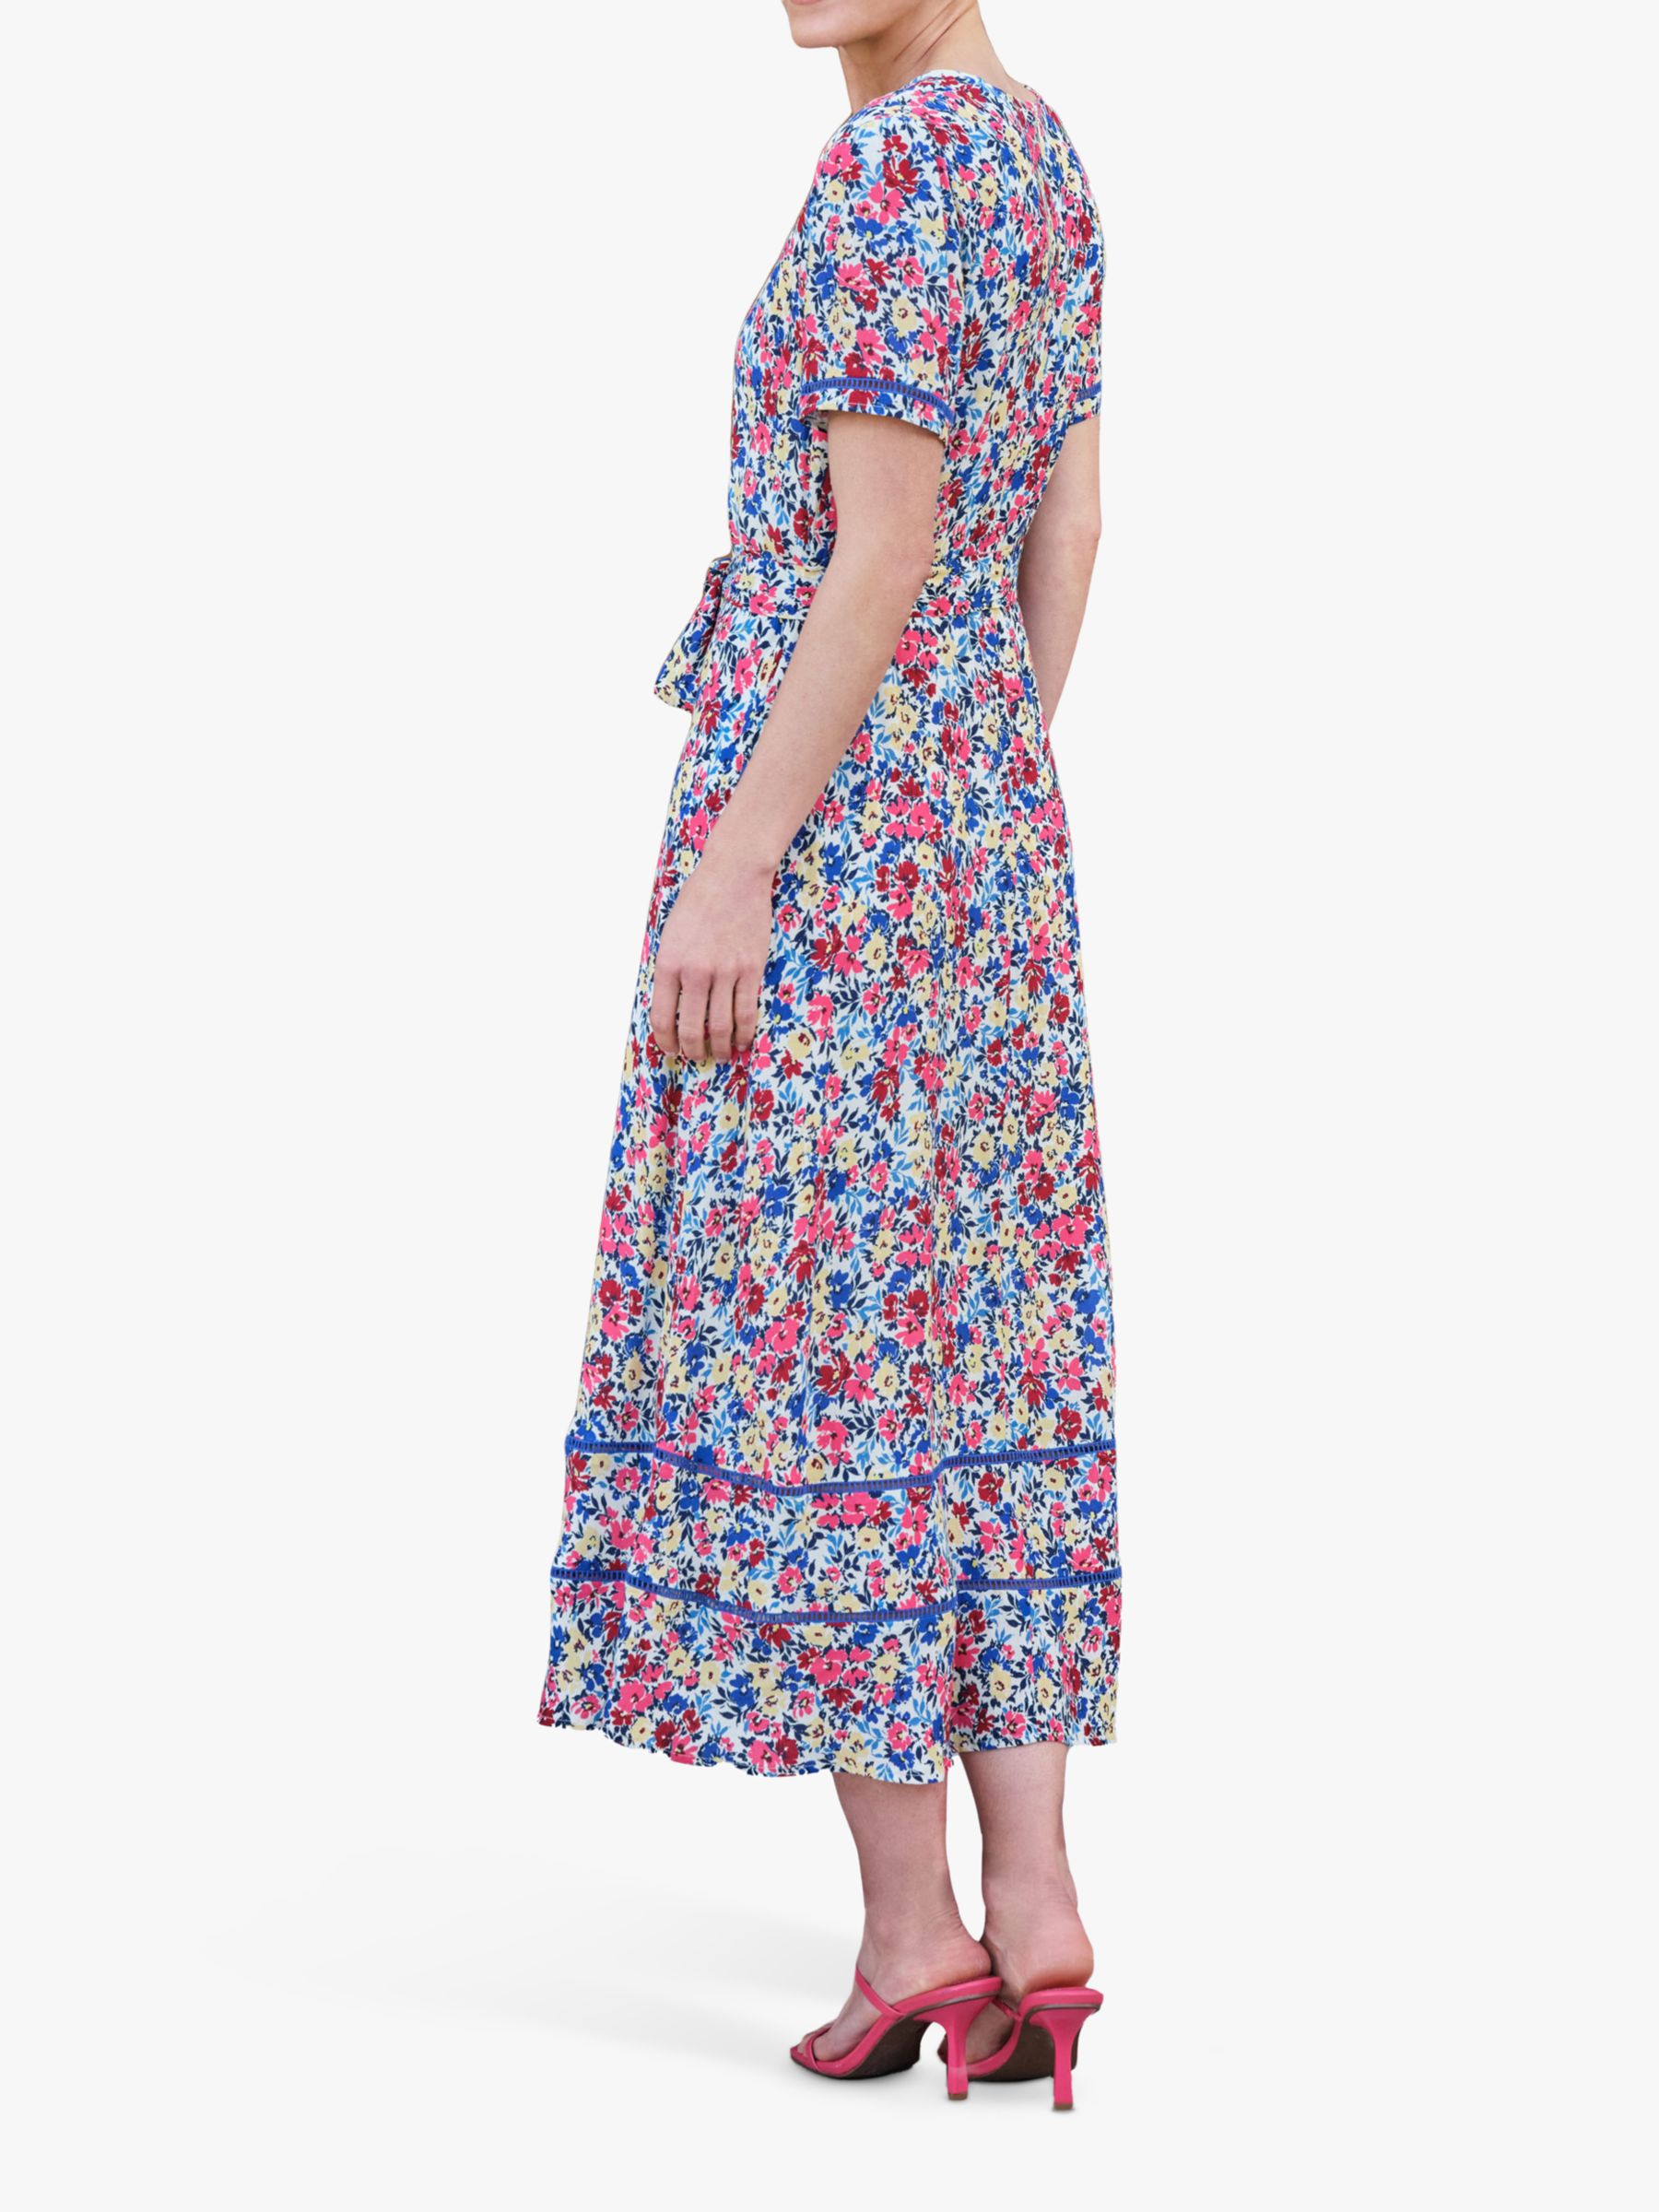 Pure Collection Floral V-Neck Midi Dress, Multi, 10